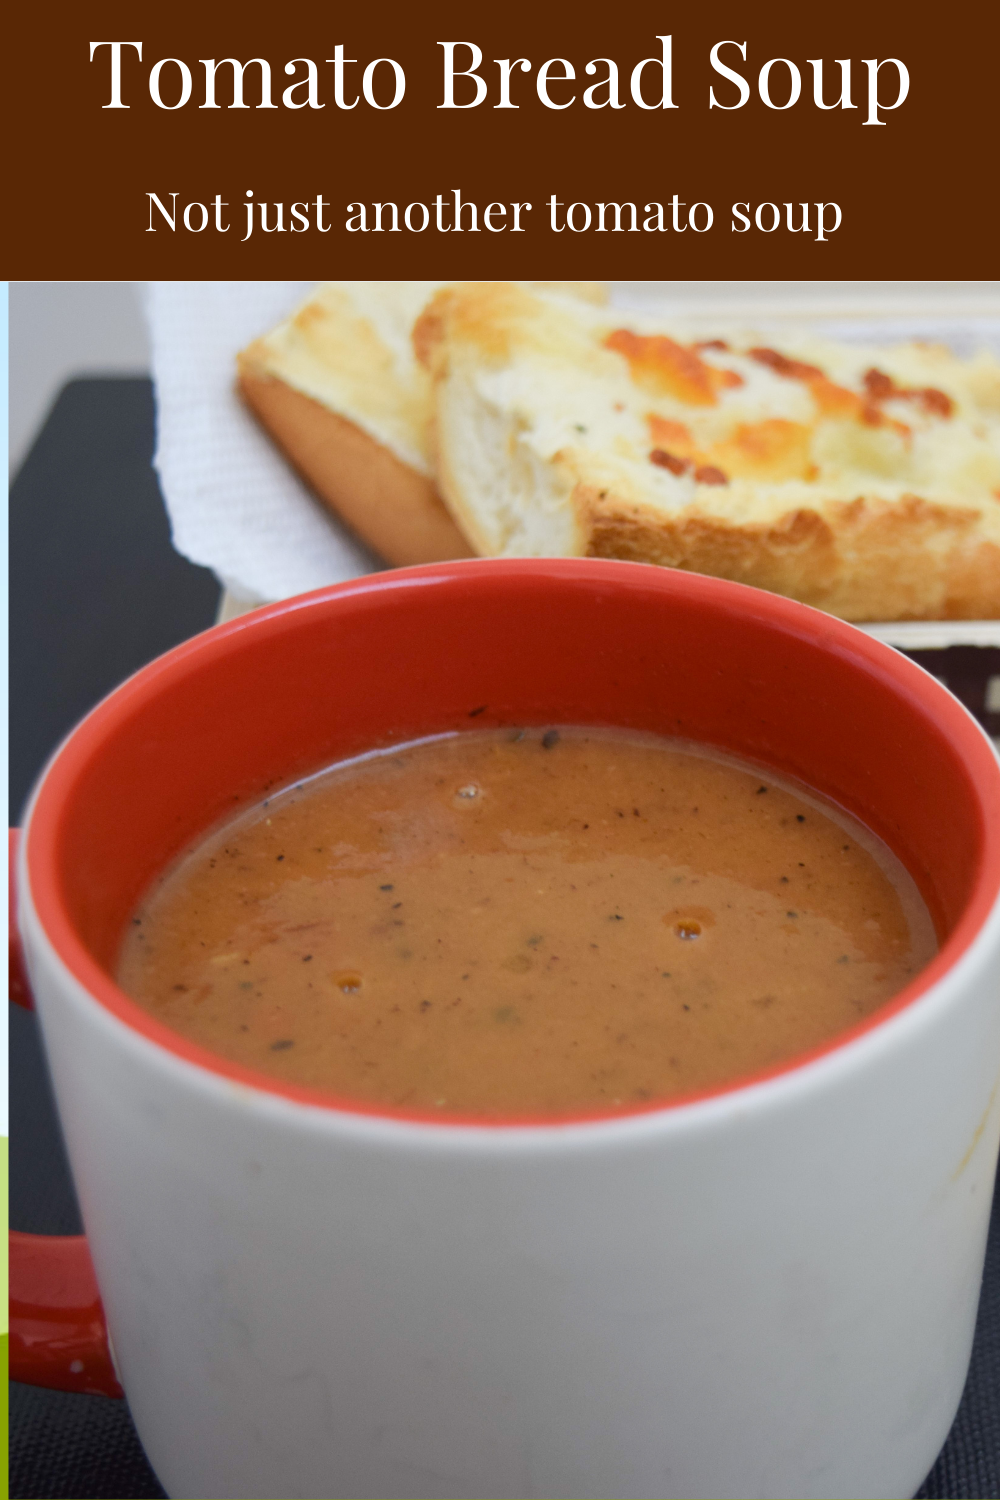 Roast tomato soup